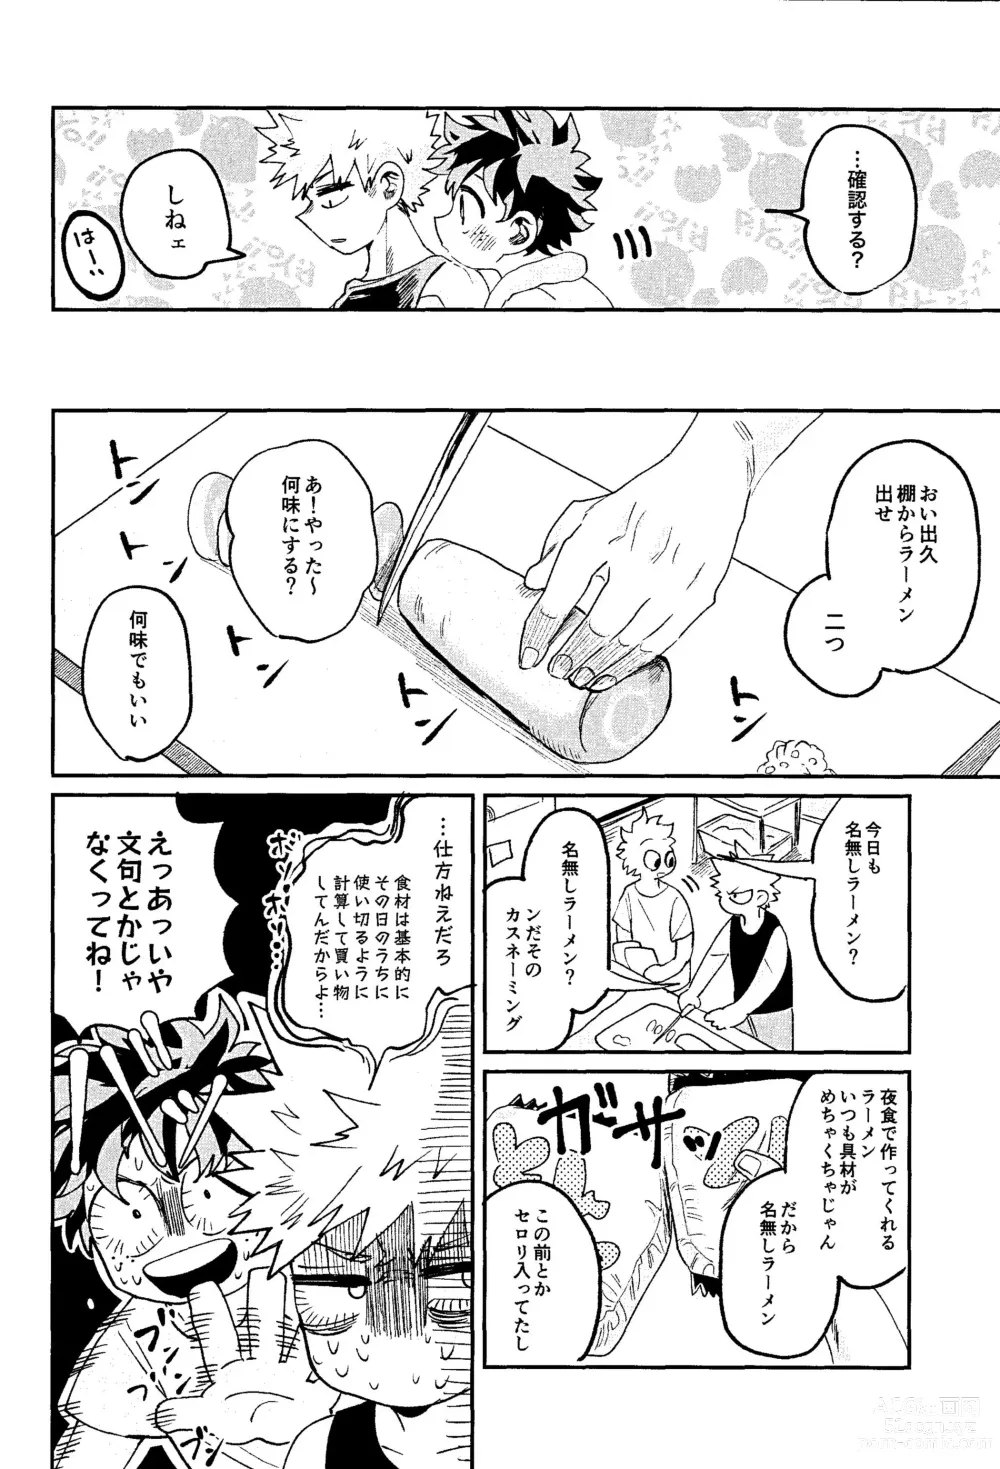 Page 12 of doujinshi Hara ga Hette wa Nanto yara